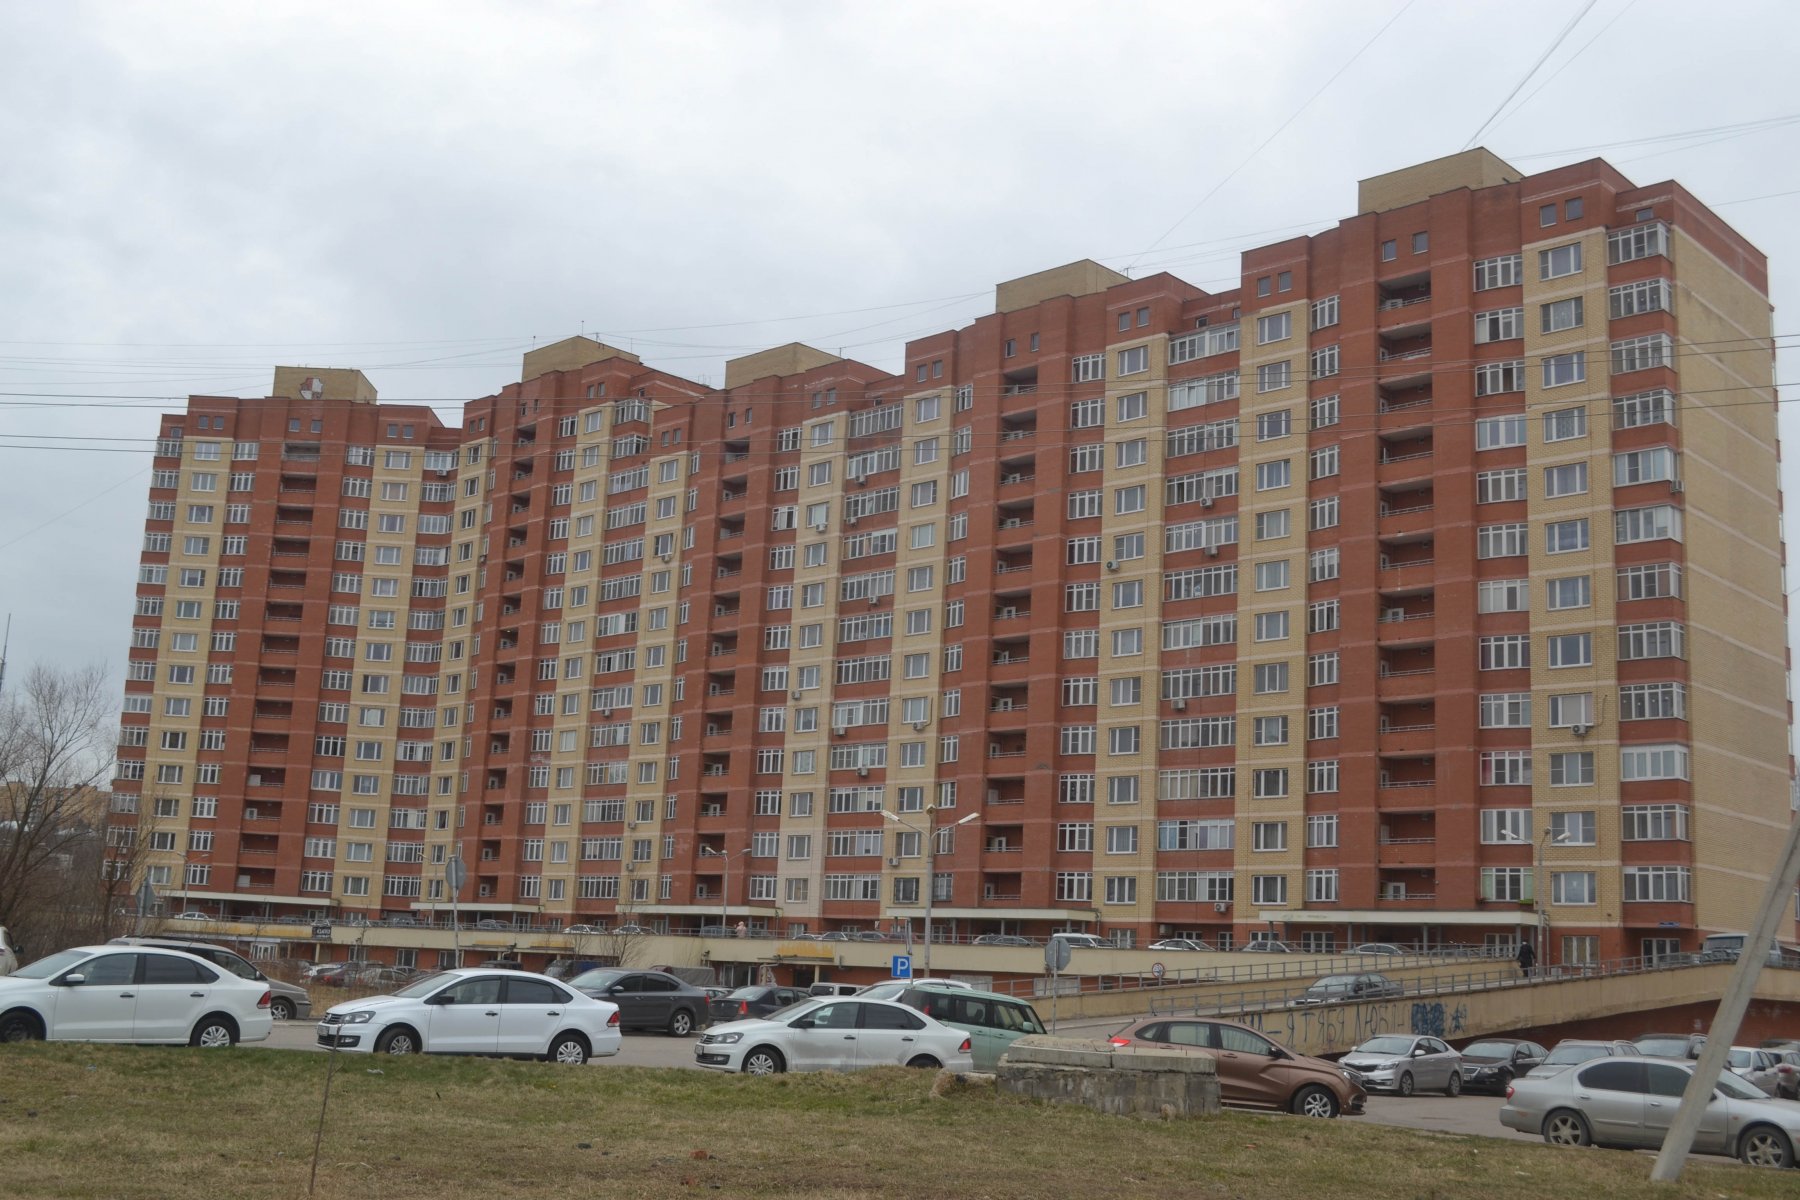 Выбор шире, новостройки дороже – эксперты объяснили рост спроса на вторичное жилье в Москве